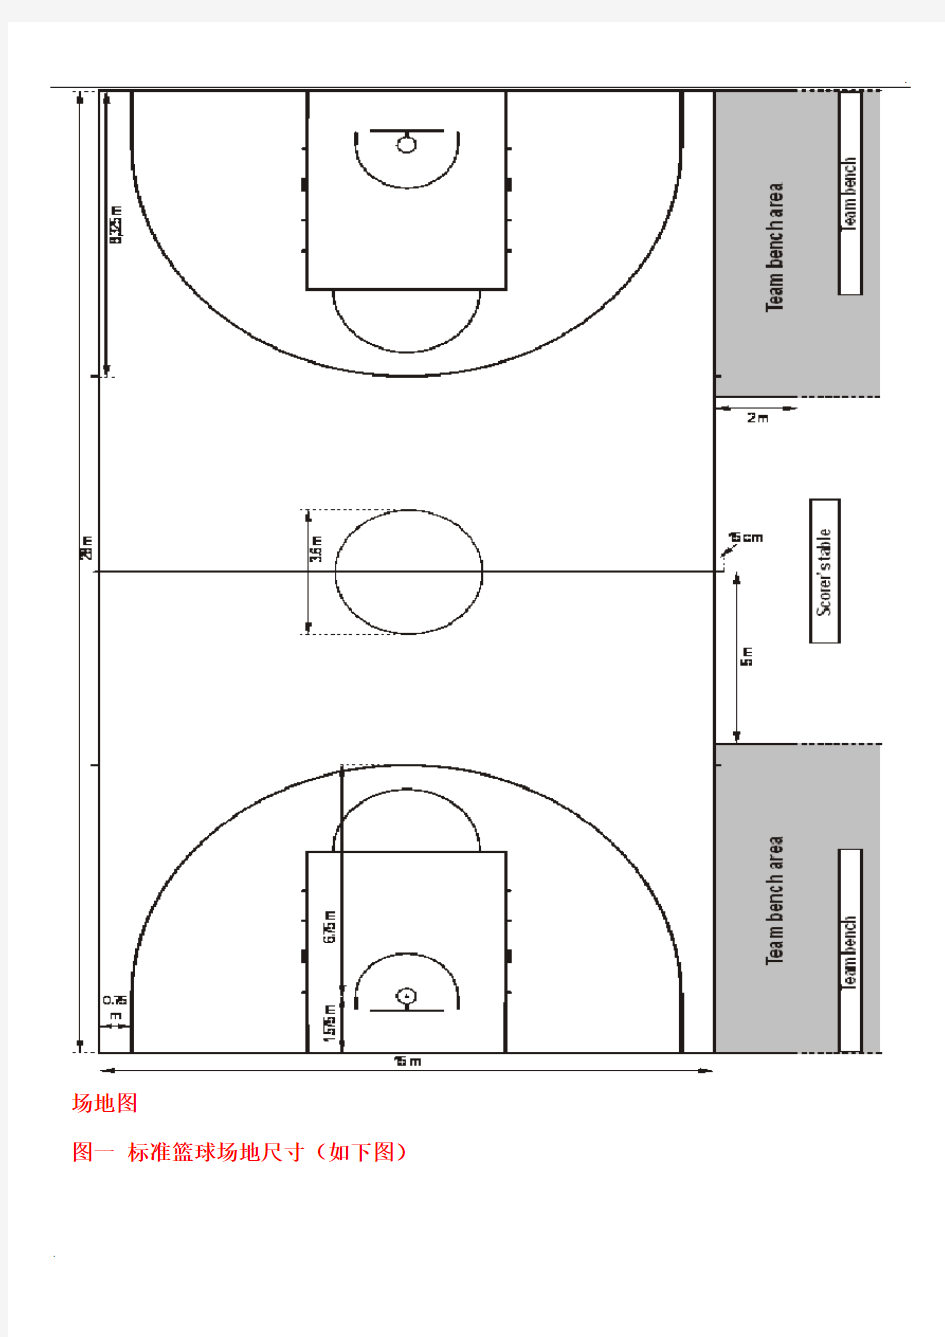 国际篮联新标准篮球场标准尺寸及说明